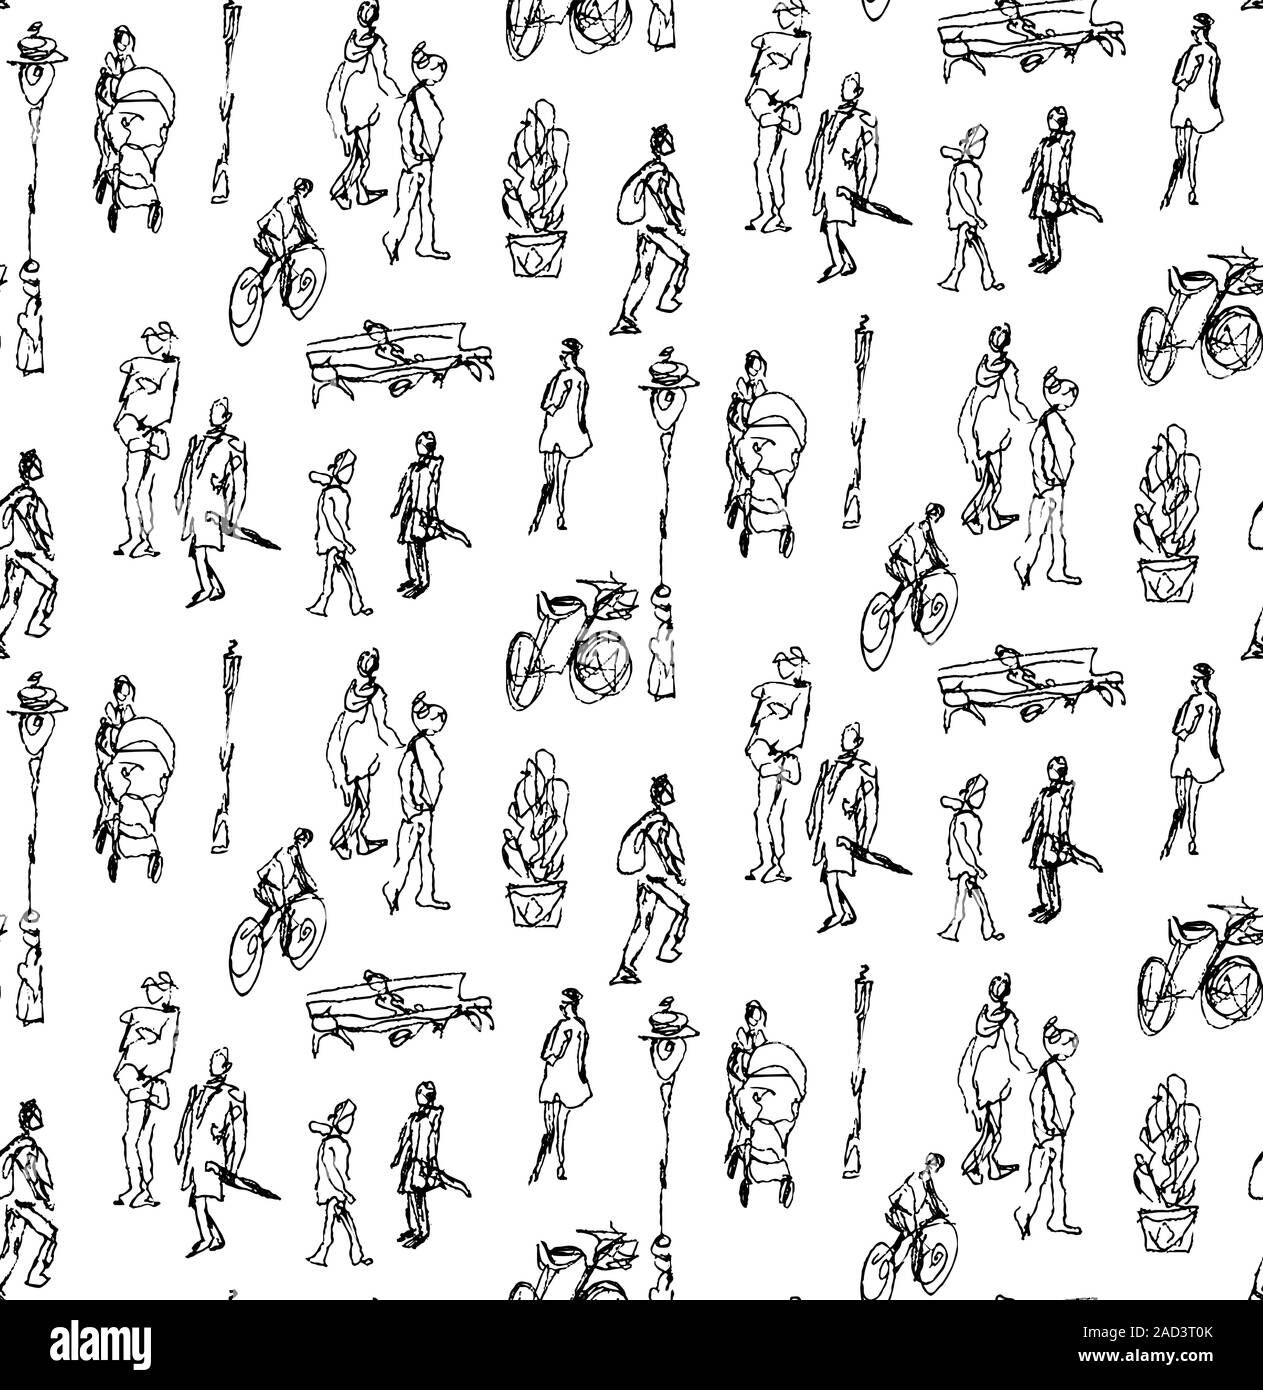 Nahtlose Muster aus Hand gezeichnet skizzierte Elemente, Menschen, Fahrrad, Laterne, Bank. Im städtischen Hintergrund, wandern Gebiet Stock Vektor